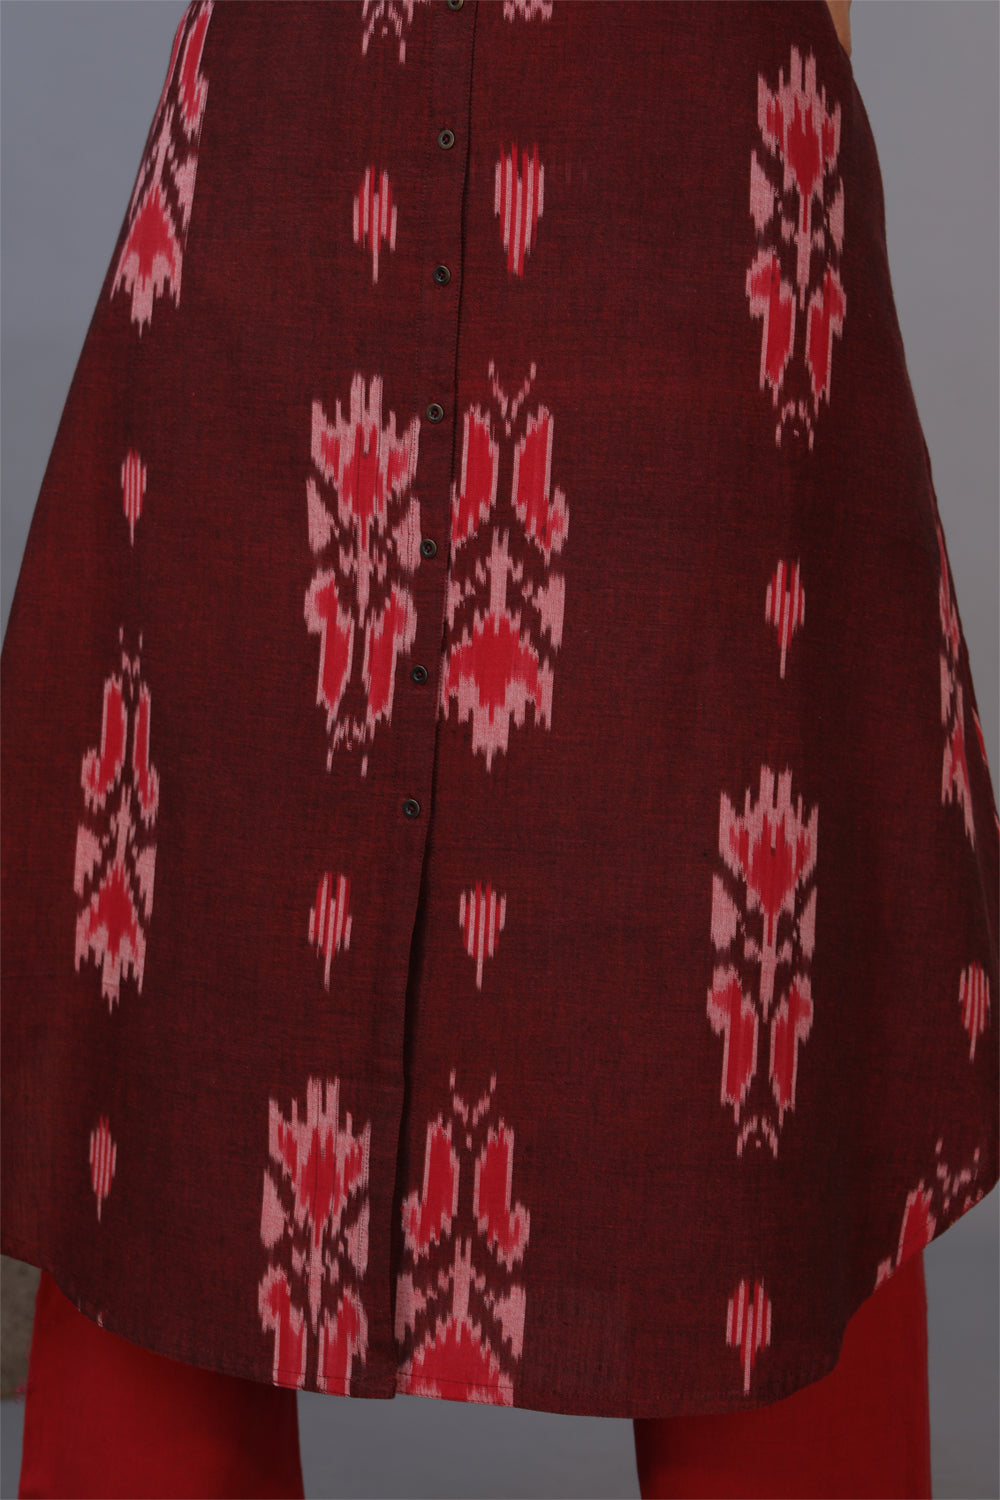 Mahogany maroon handwoven cotton Ikat long kurta and pant set